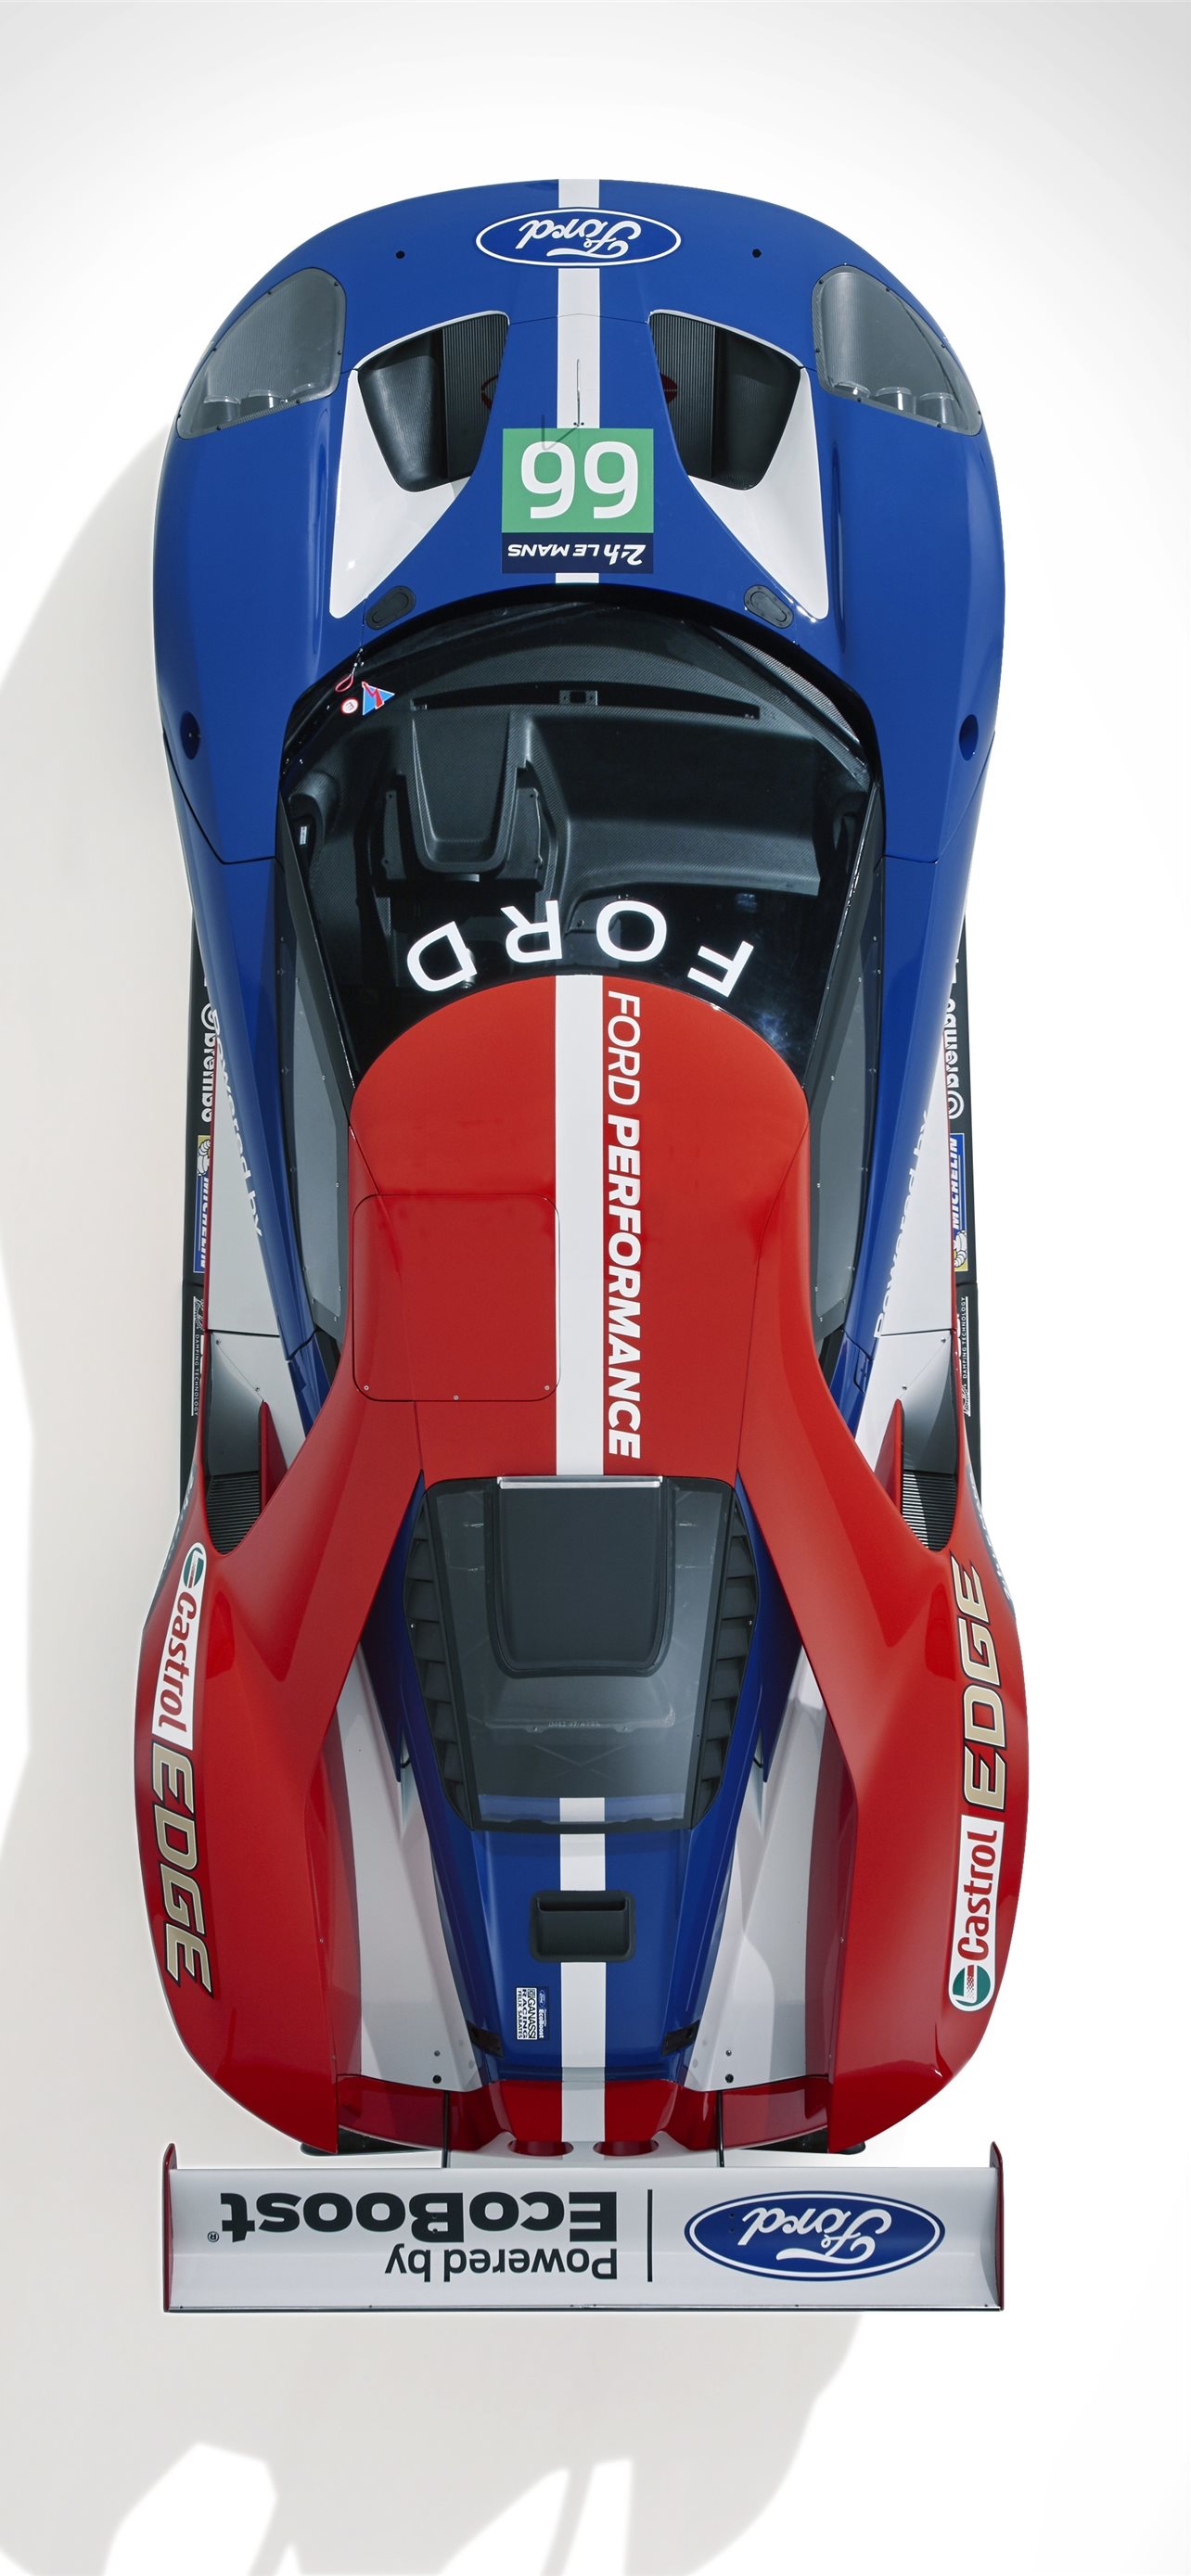 Audi R18 Le Mans Wallpapers